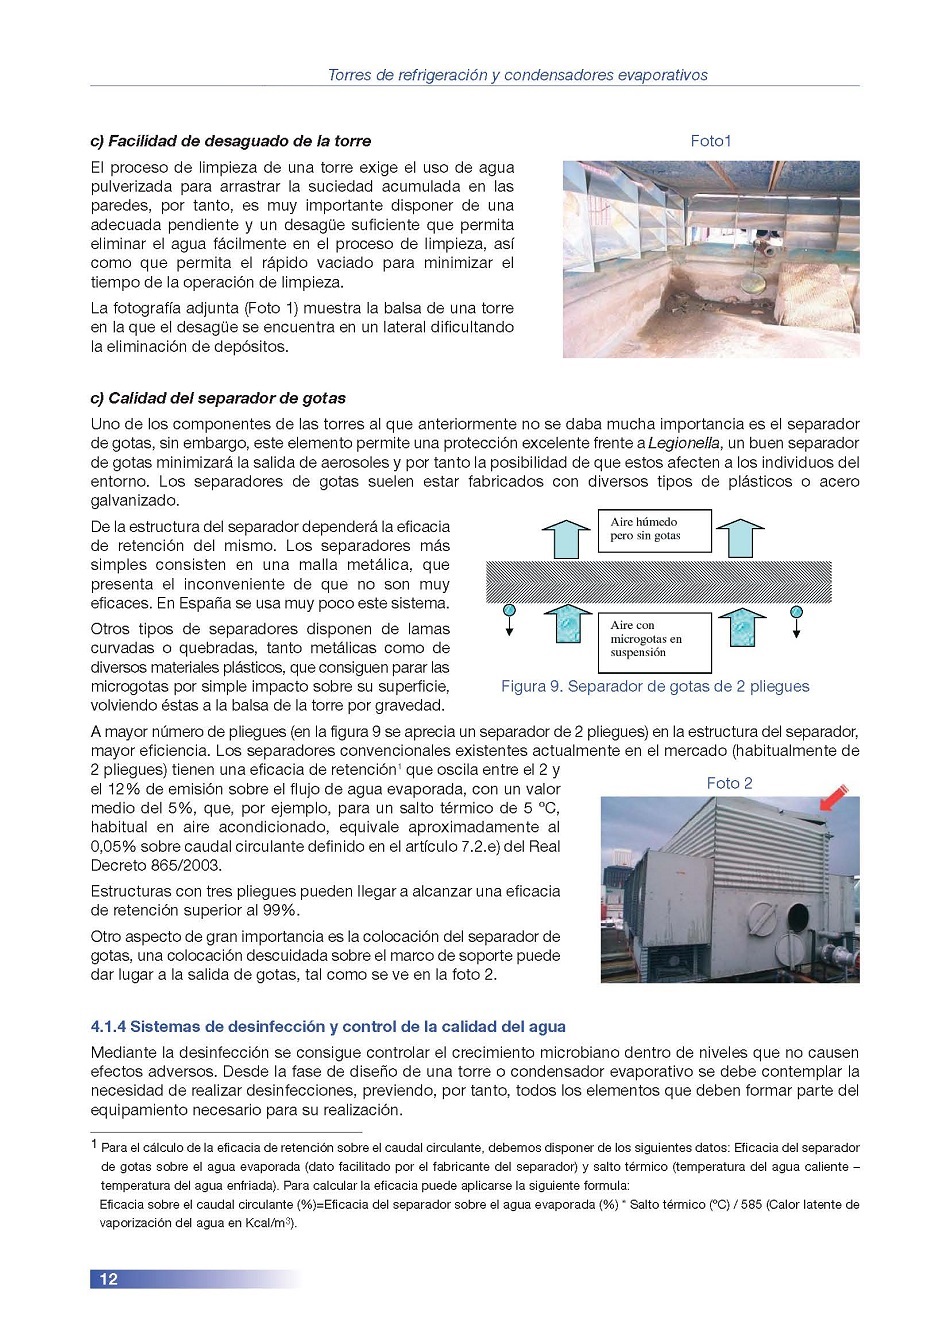 Torres de Refrigeracin y Condensadores Evaporativos. Pgina 12